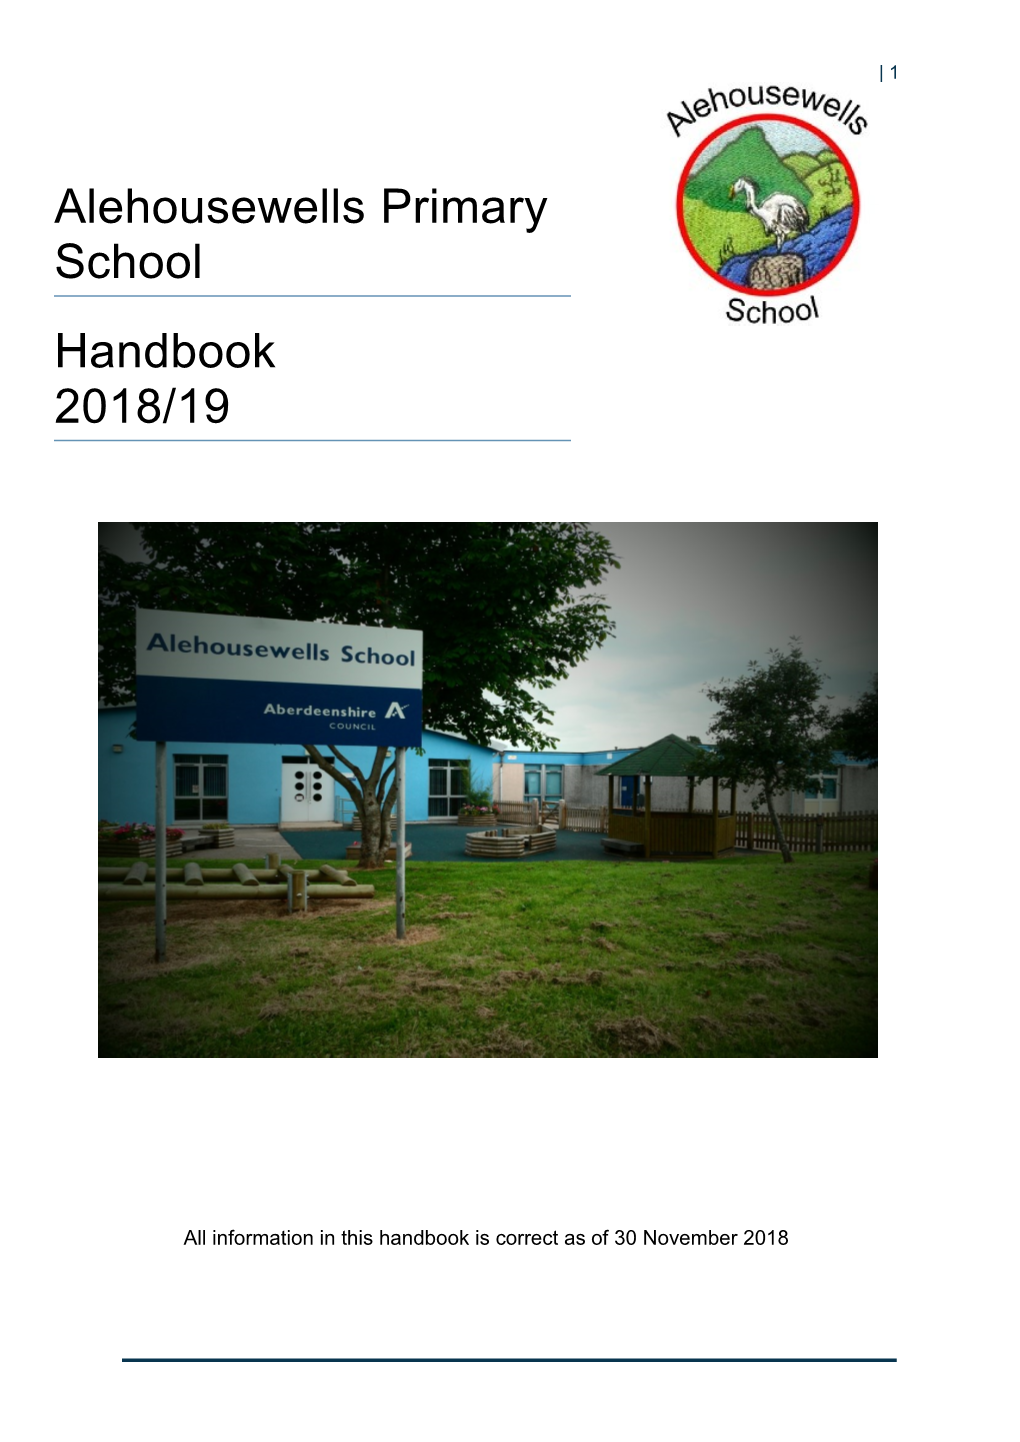 Alehousewells Primary School Handbook 2018/19